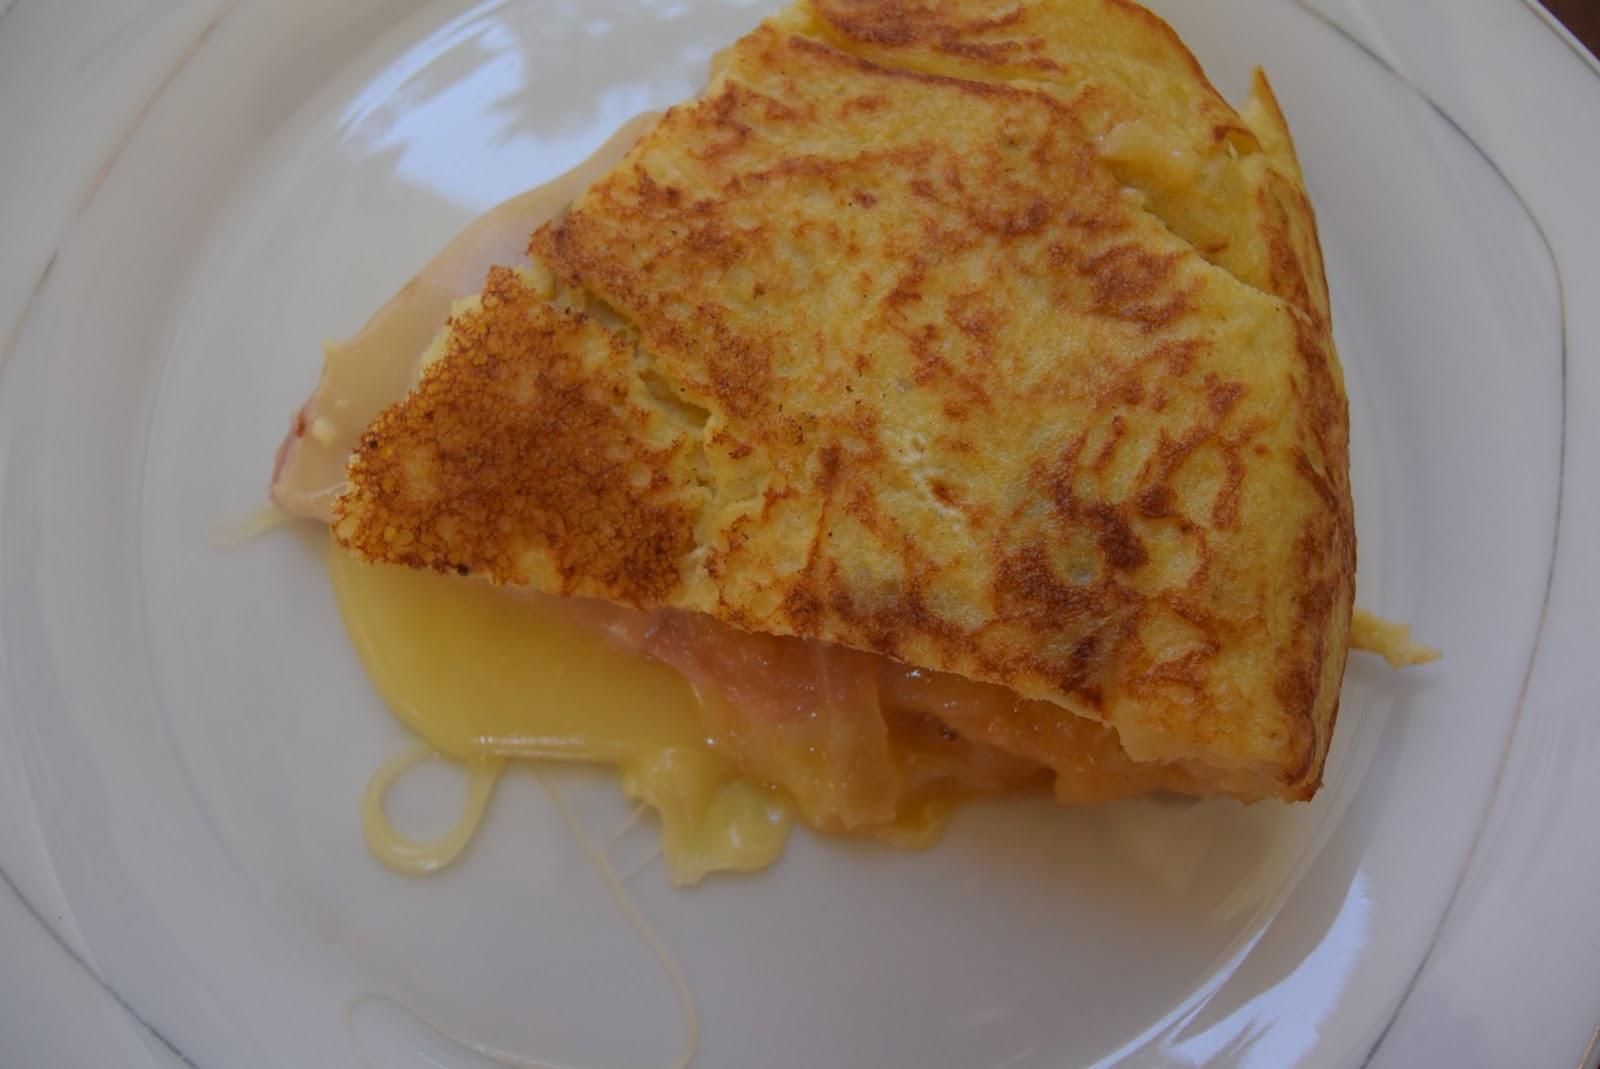 ΔΕΙΤΕ τι μπορείτε να φτιάξετε με ελάχιστα υλικά όπως αυγά,τυρί του τοστ !!! Ενα γρήγορο χορταστικό Τ Ε Λ Ε Ι Ο γεύμα